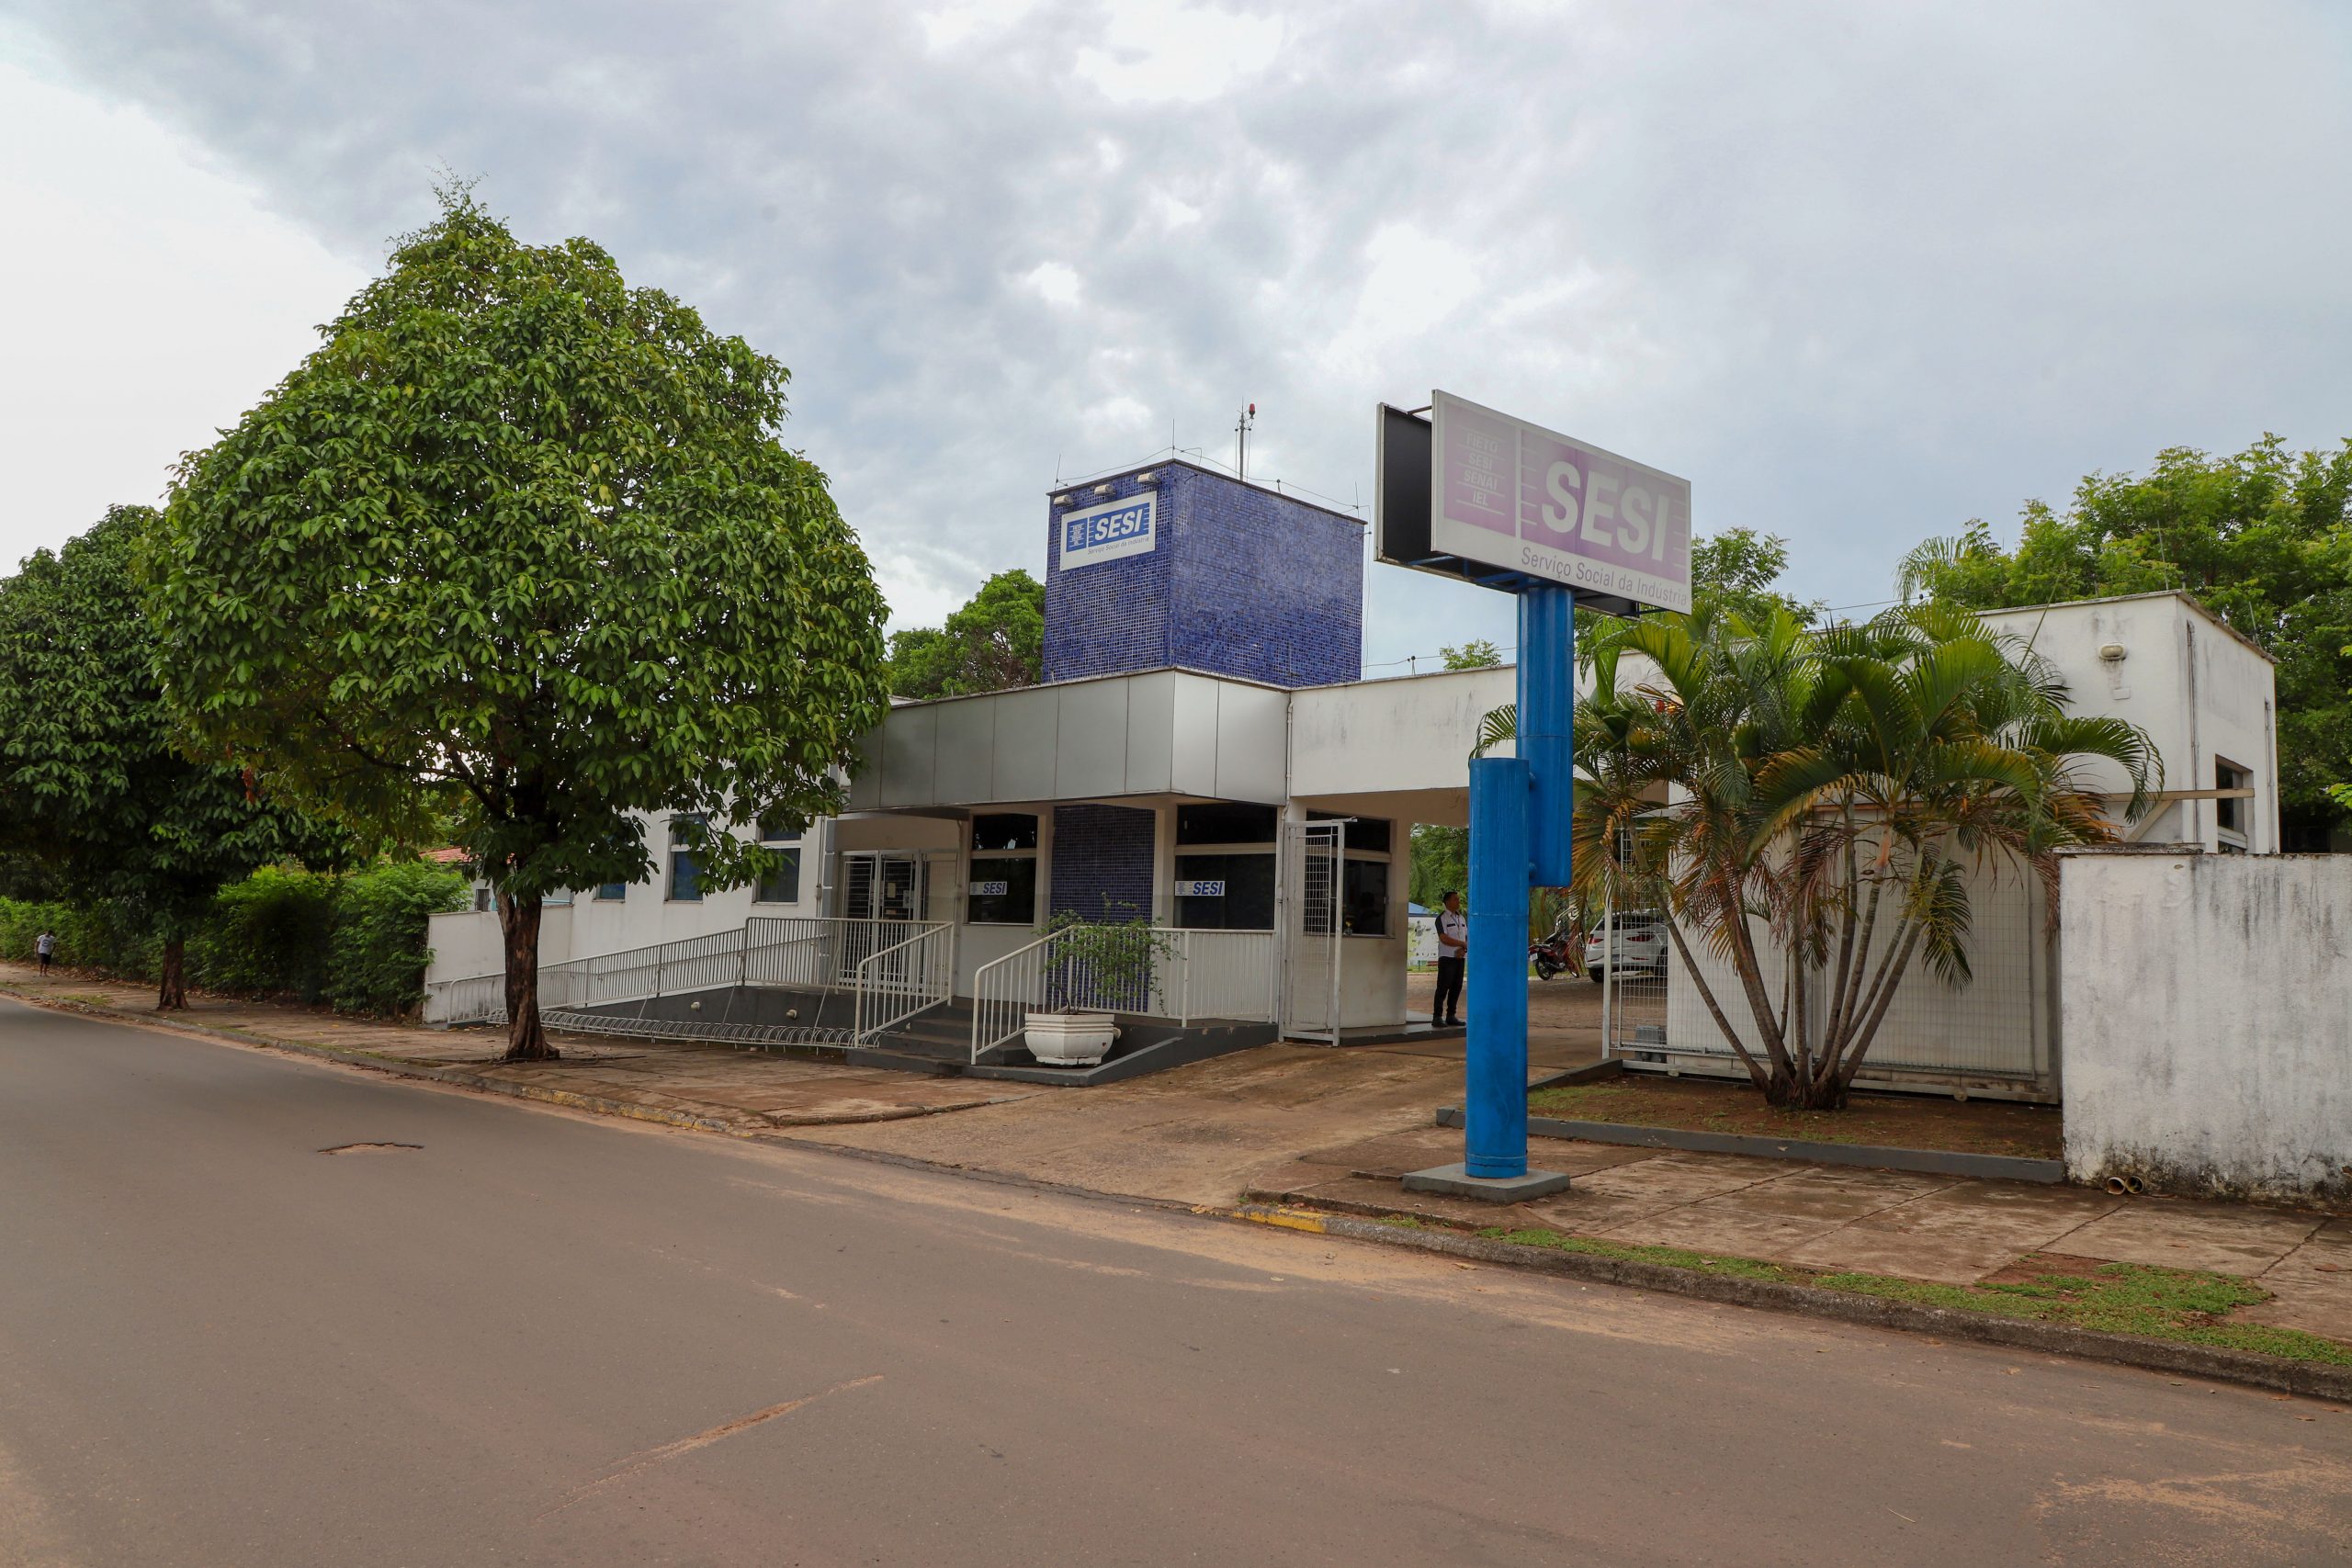 Técnico em Enfermagem: SESI está com vaga aberta para Araguaína